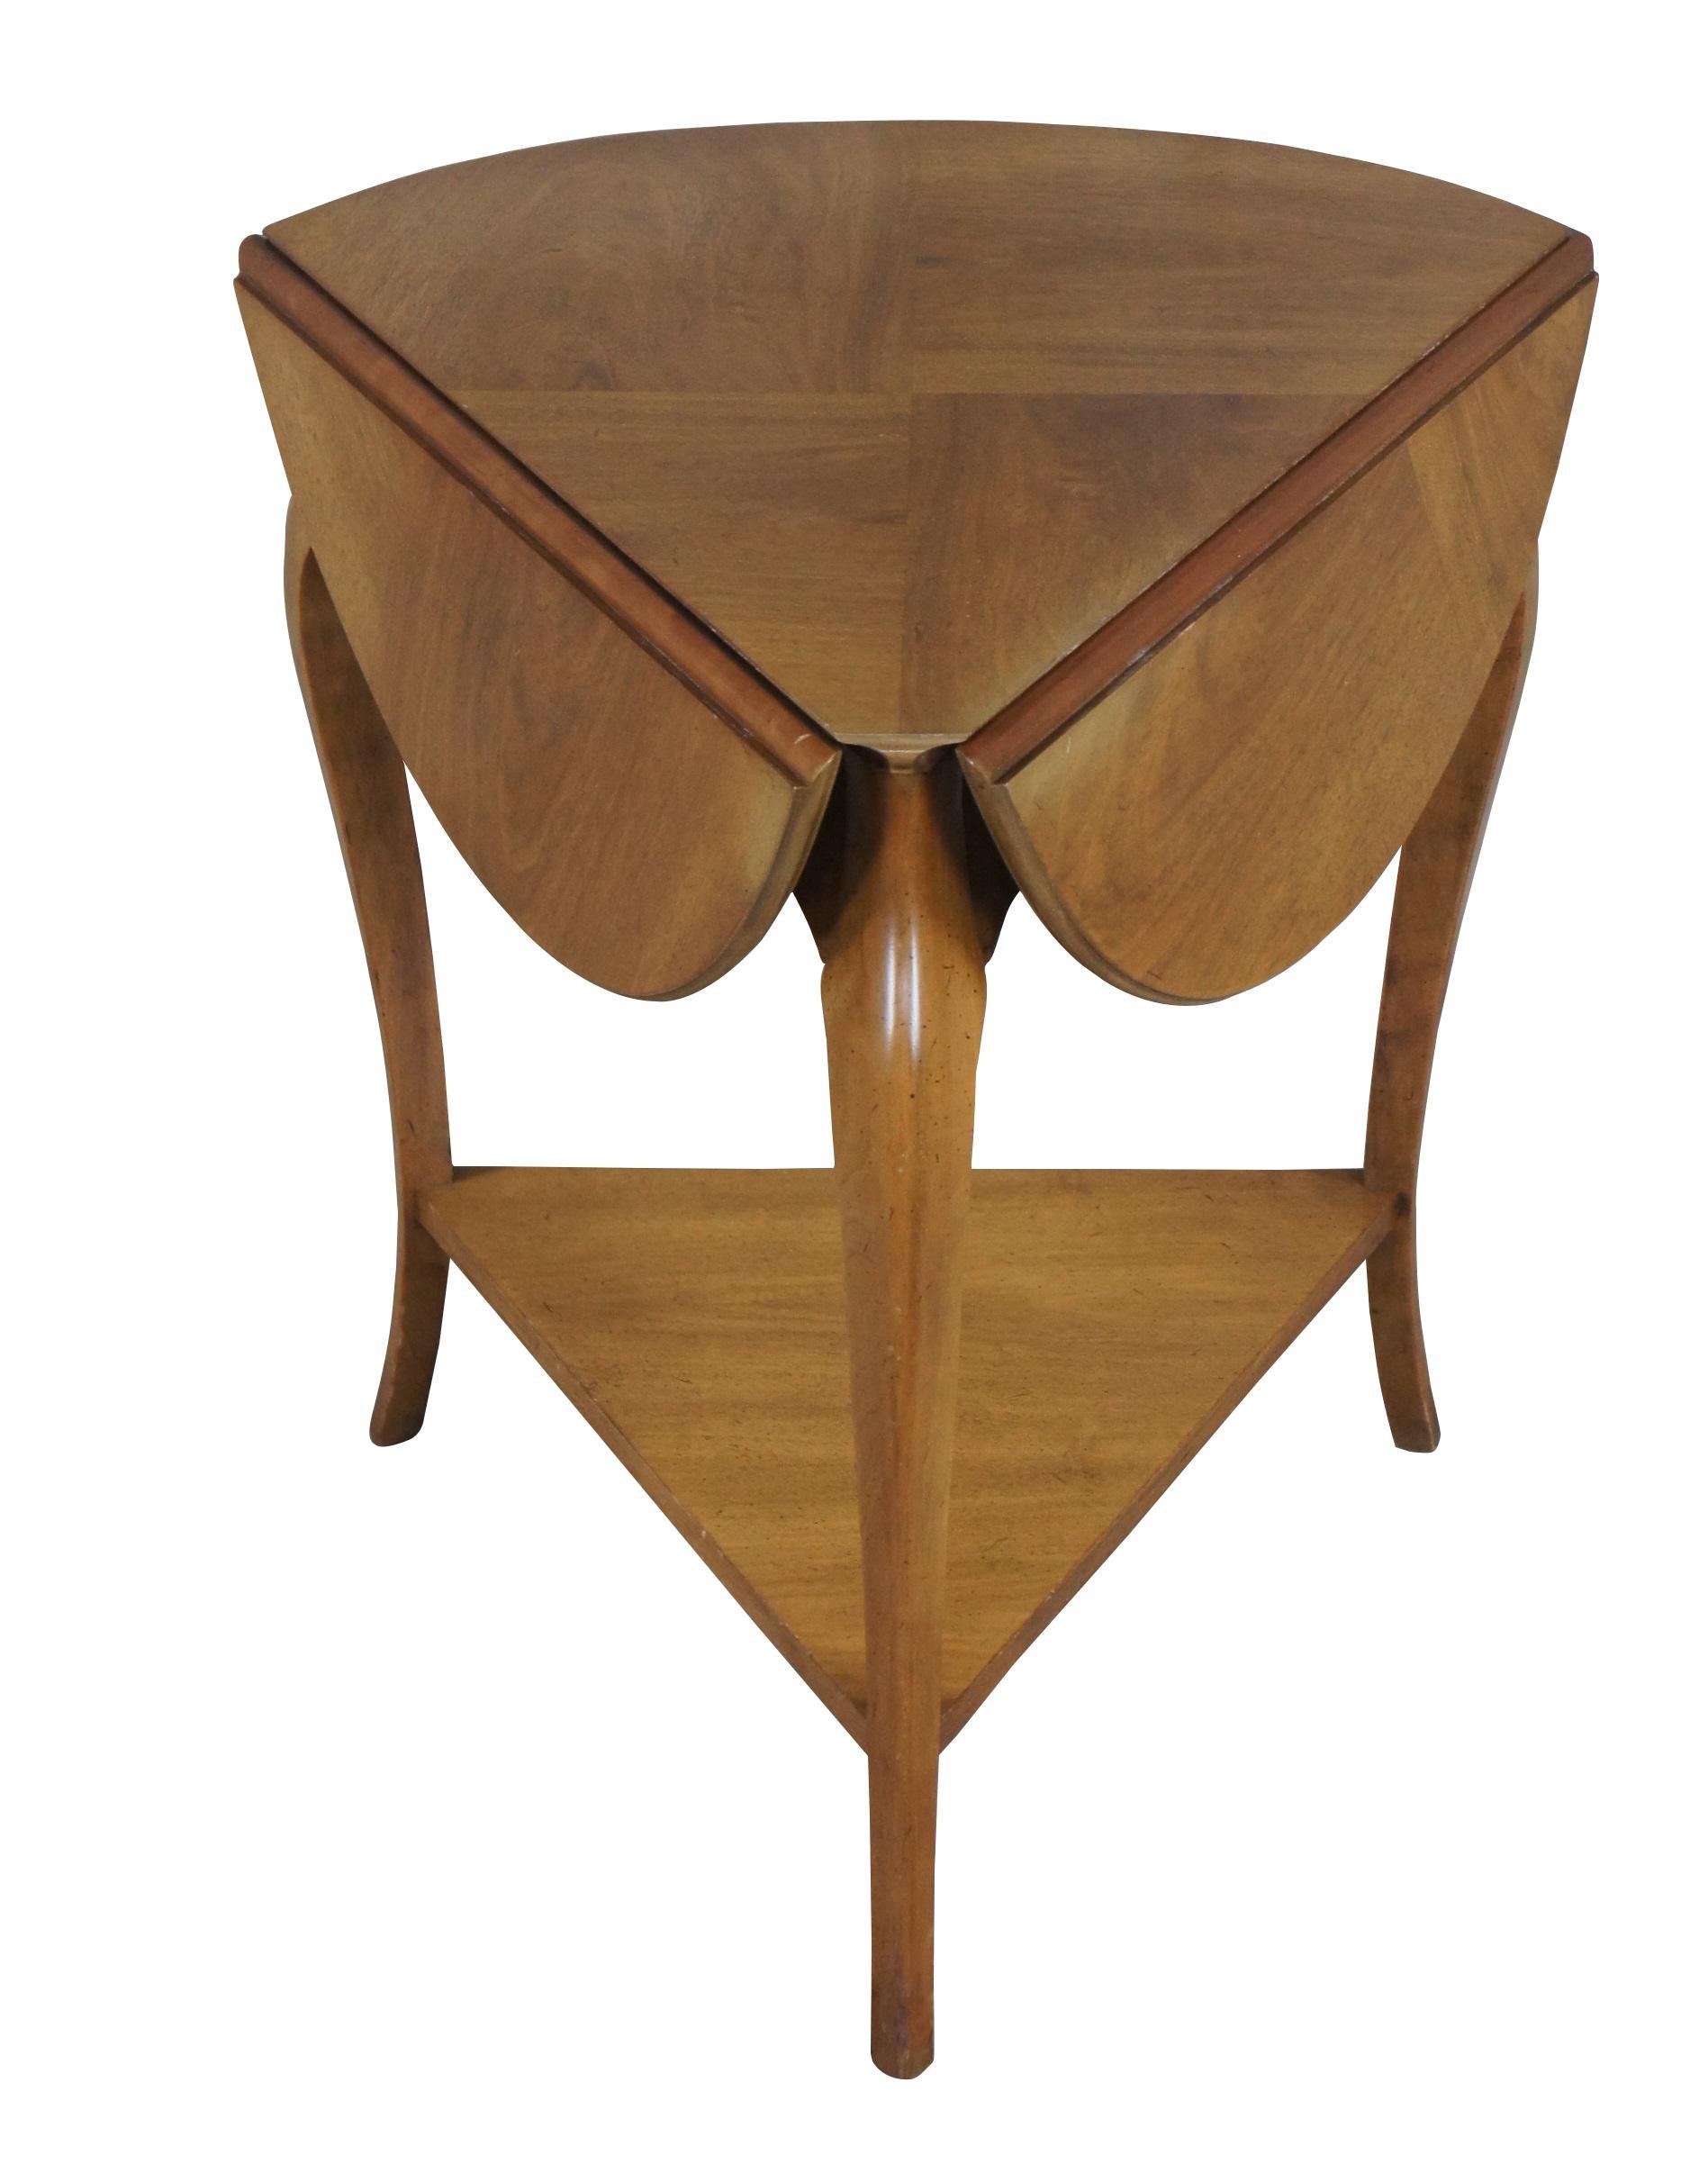 Table d'appoint vintage en mouchoir de poche John Widdicomb, circa 1960.  Fabriquée en noyer, elle présente une forme triangulaire avec deux niveaux de feuilles tombantes, un plateau en forme d'allumette et des pieds en cabriole.  

John